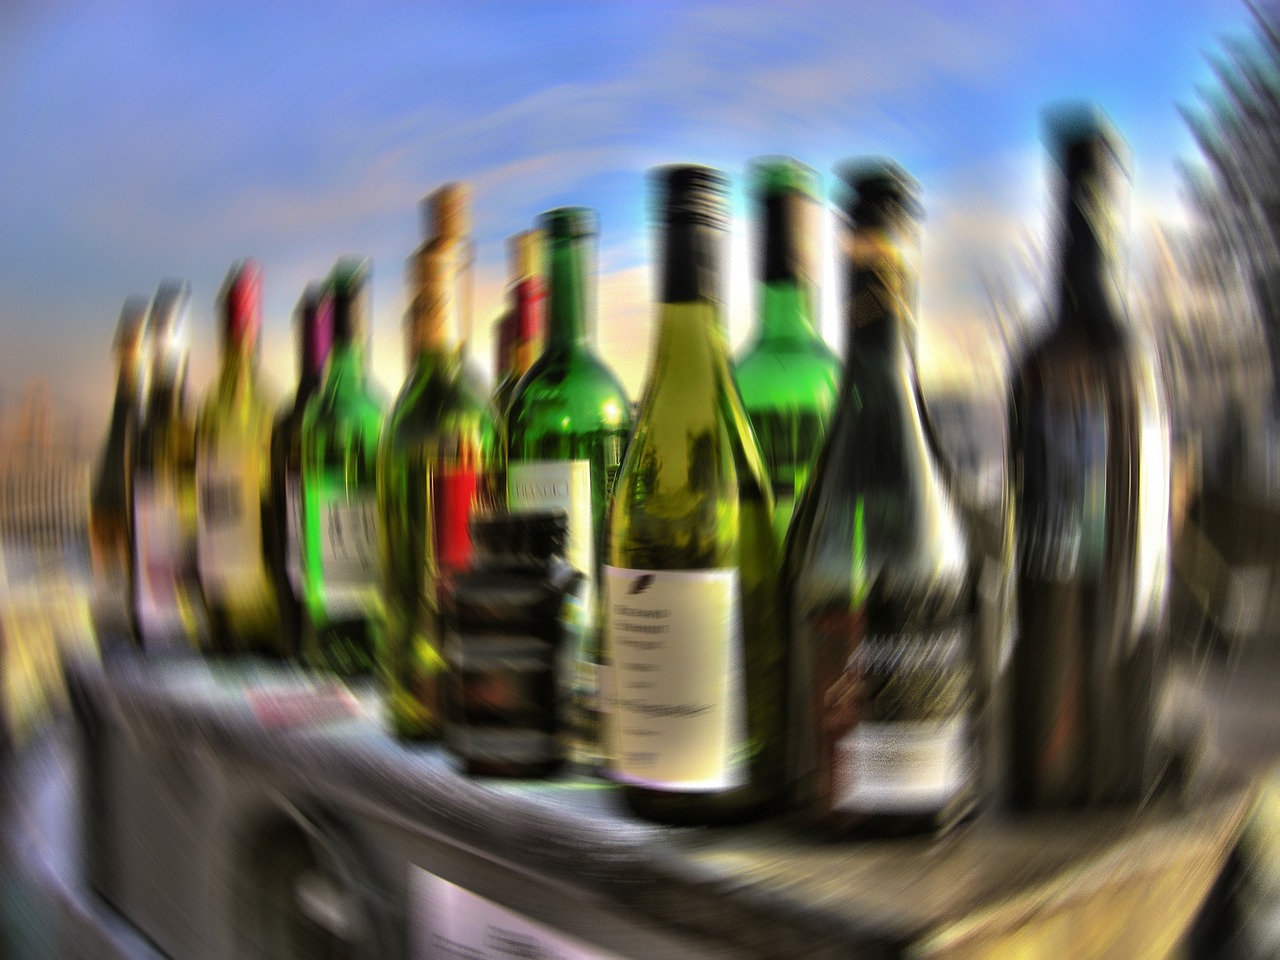 Adolescenti, che cos’è “l’abbuffata alcolica”